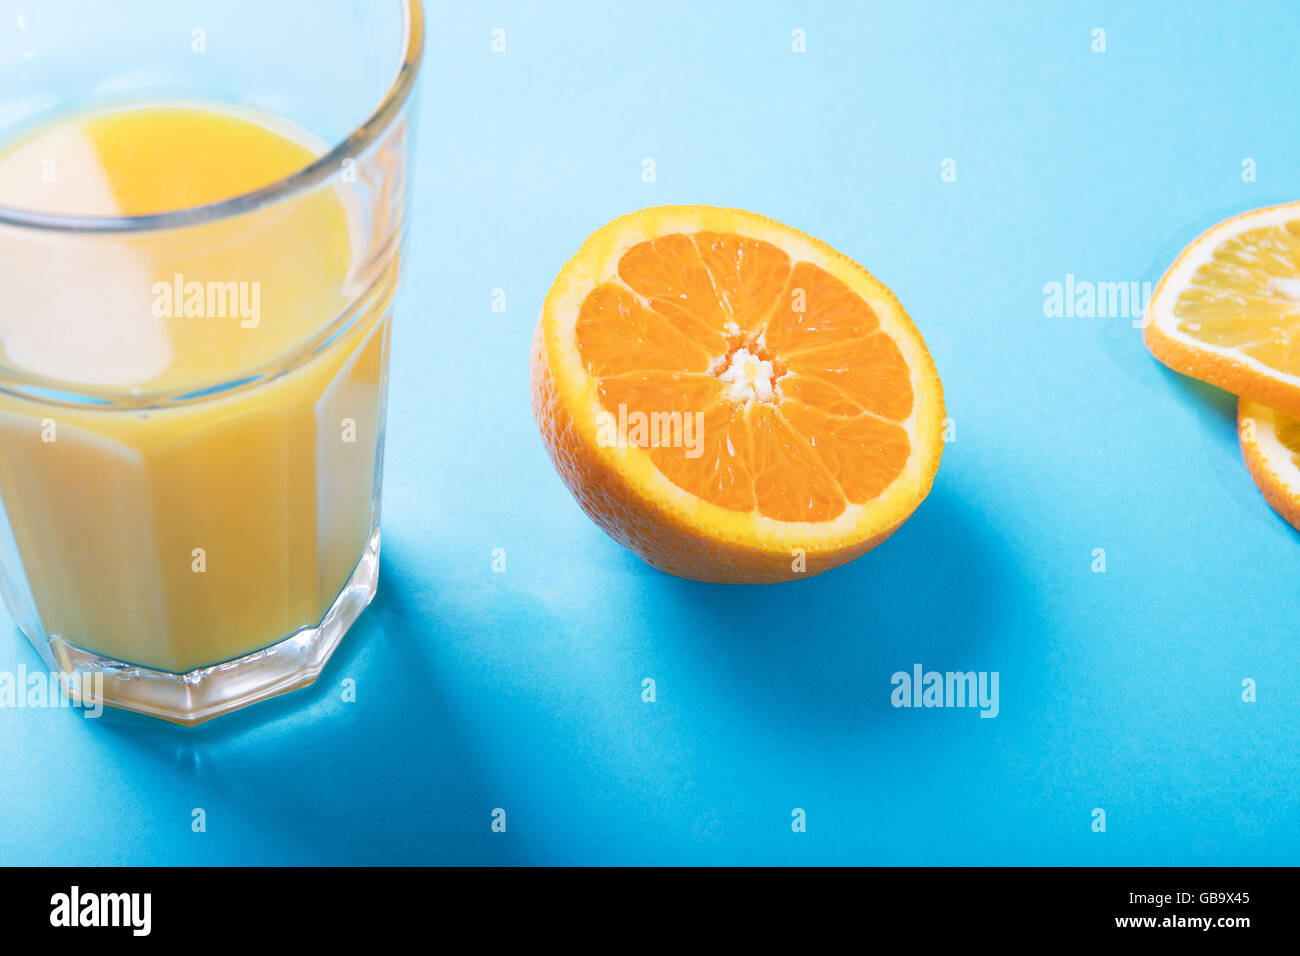 Glass of orange juice, half of orange and oranges slices Stock Photo